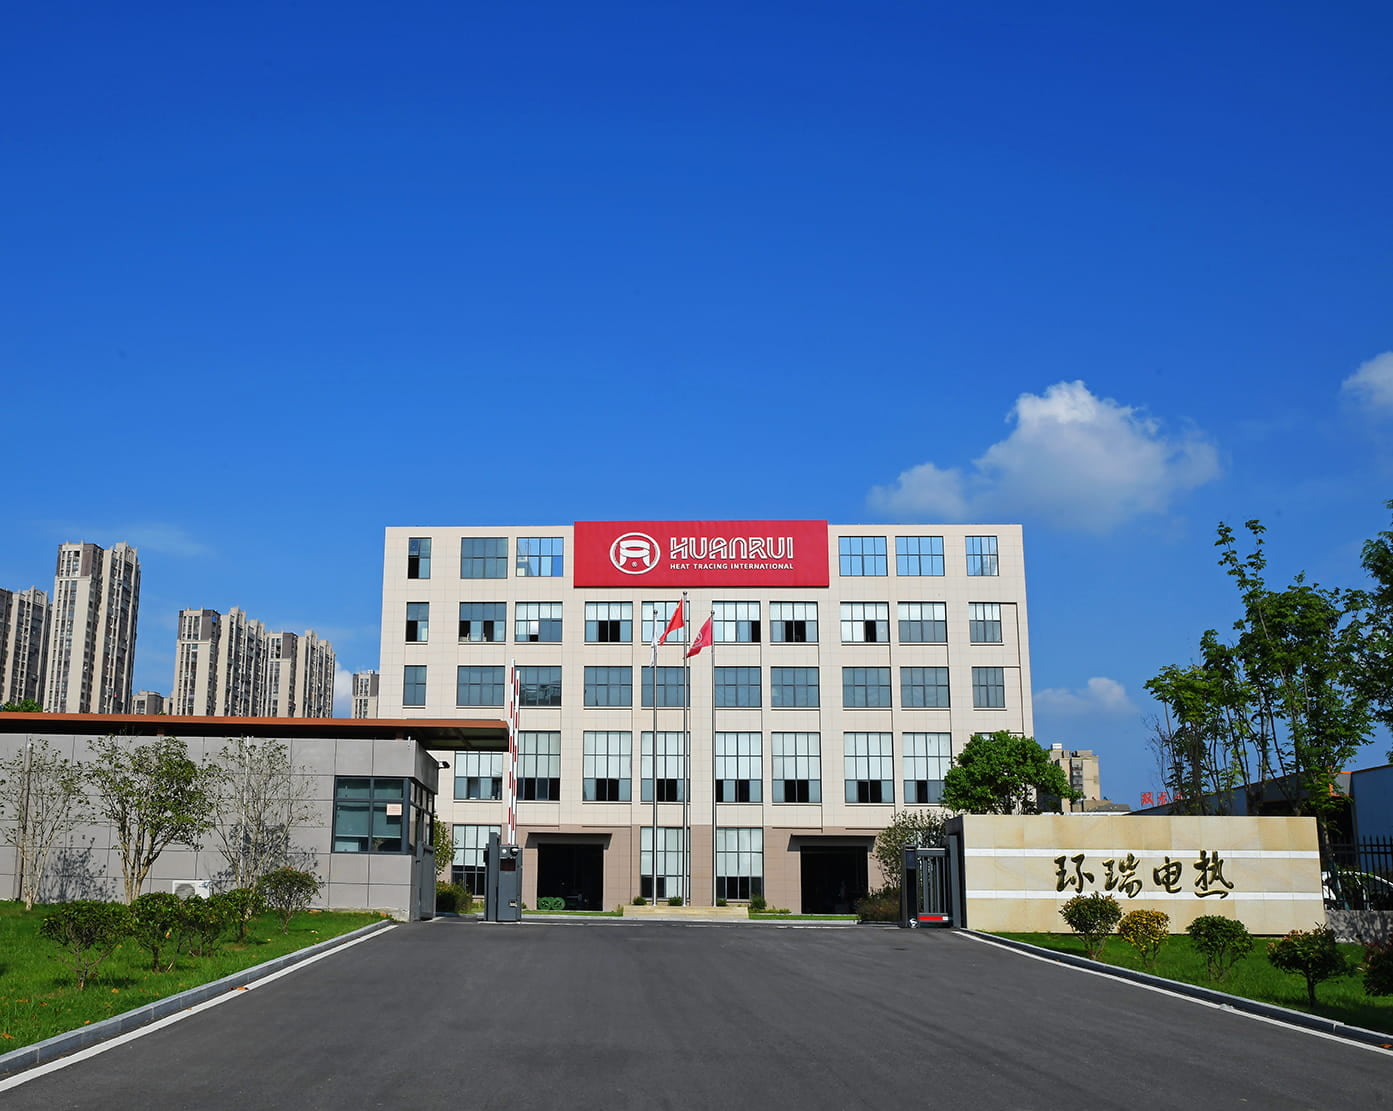 Ny fabrik Nytt utseende/Anhui Huanruis ursprungliga avsikt har inte förändrats/smiter framåt
